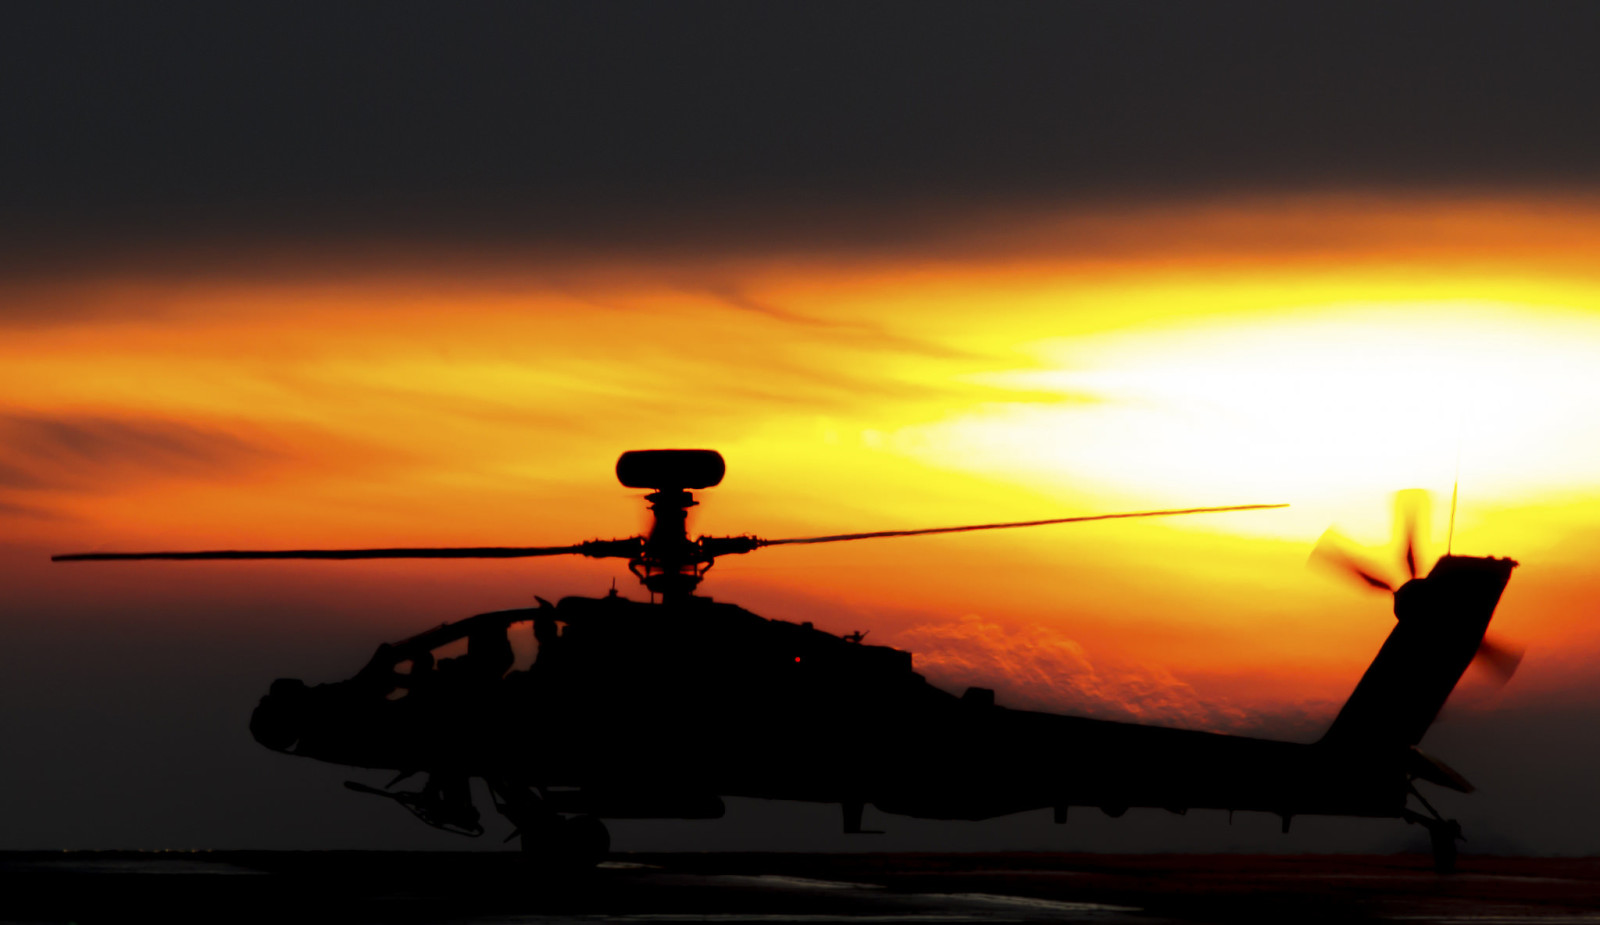 ヘリコプター, 衝撃, アパッチ, AH-64, メイン, 「Apache」